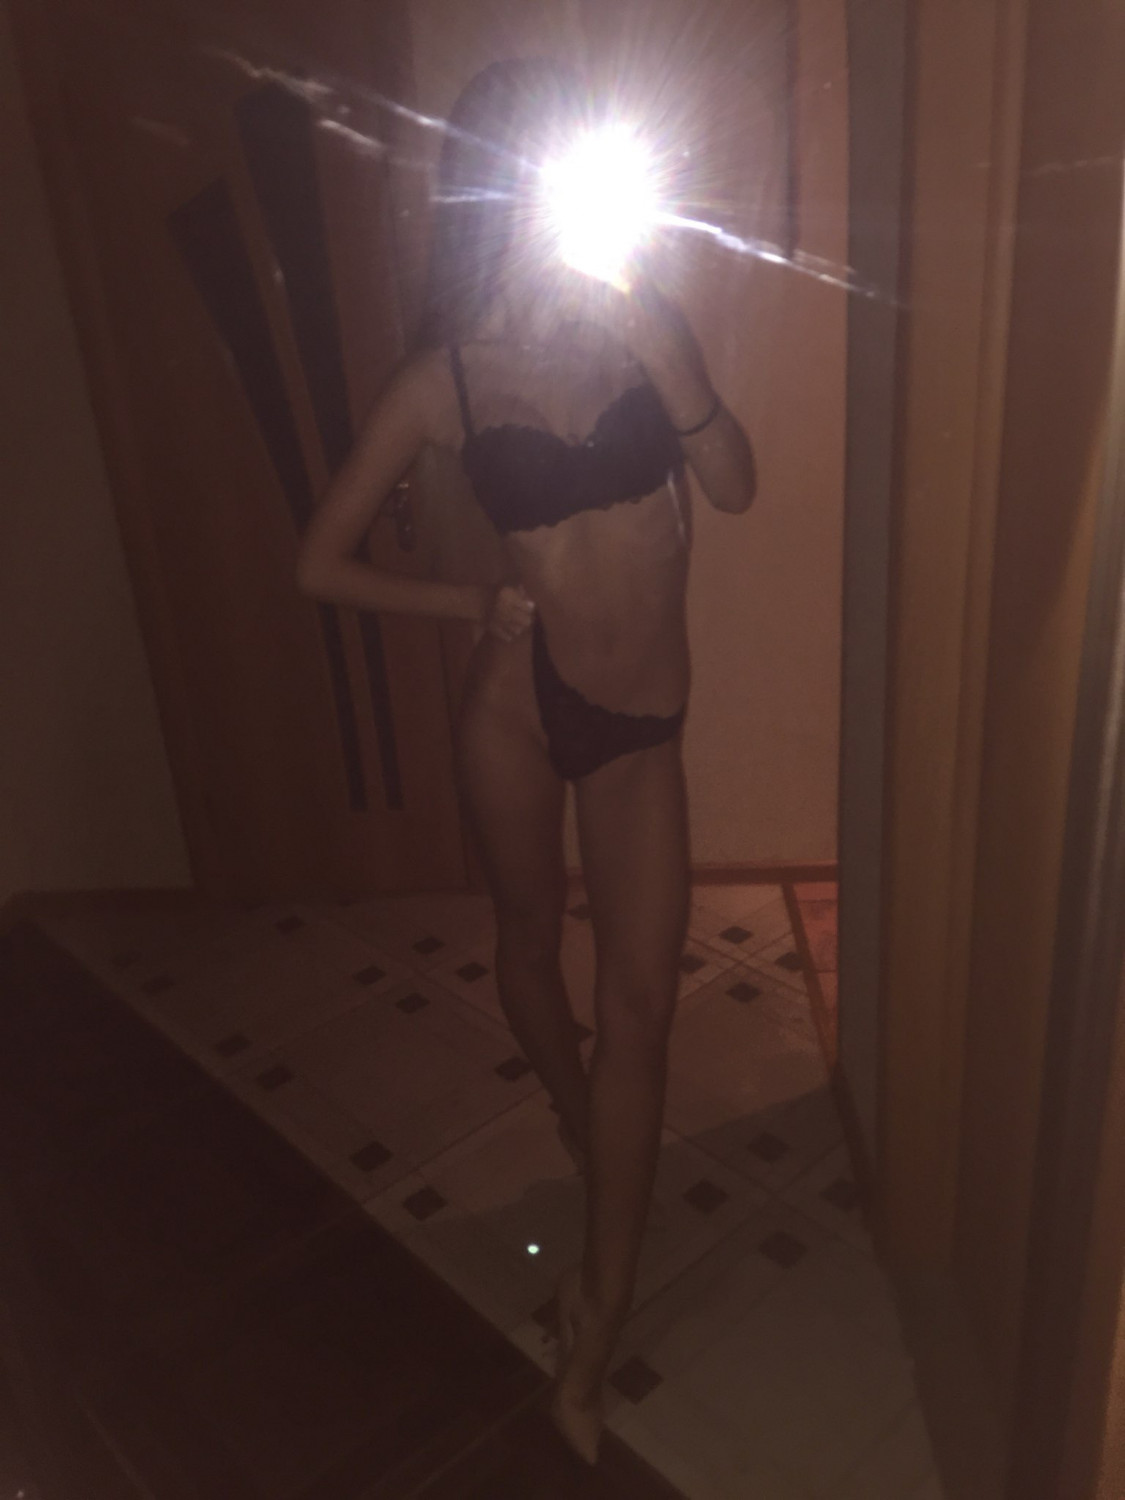 Leaked Nudes of Slim, Hot Blonde Teen - Porn photo